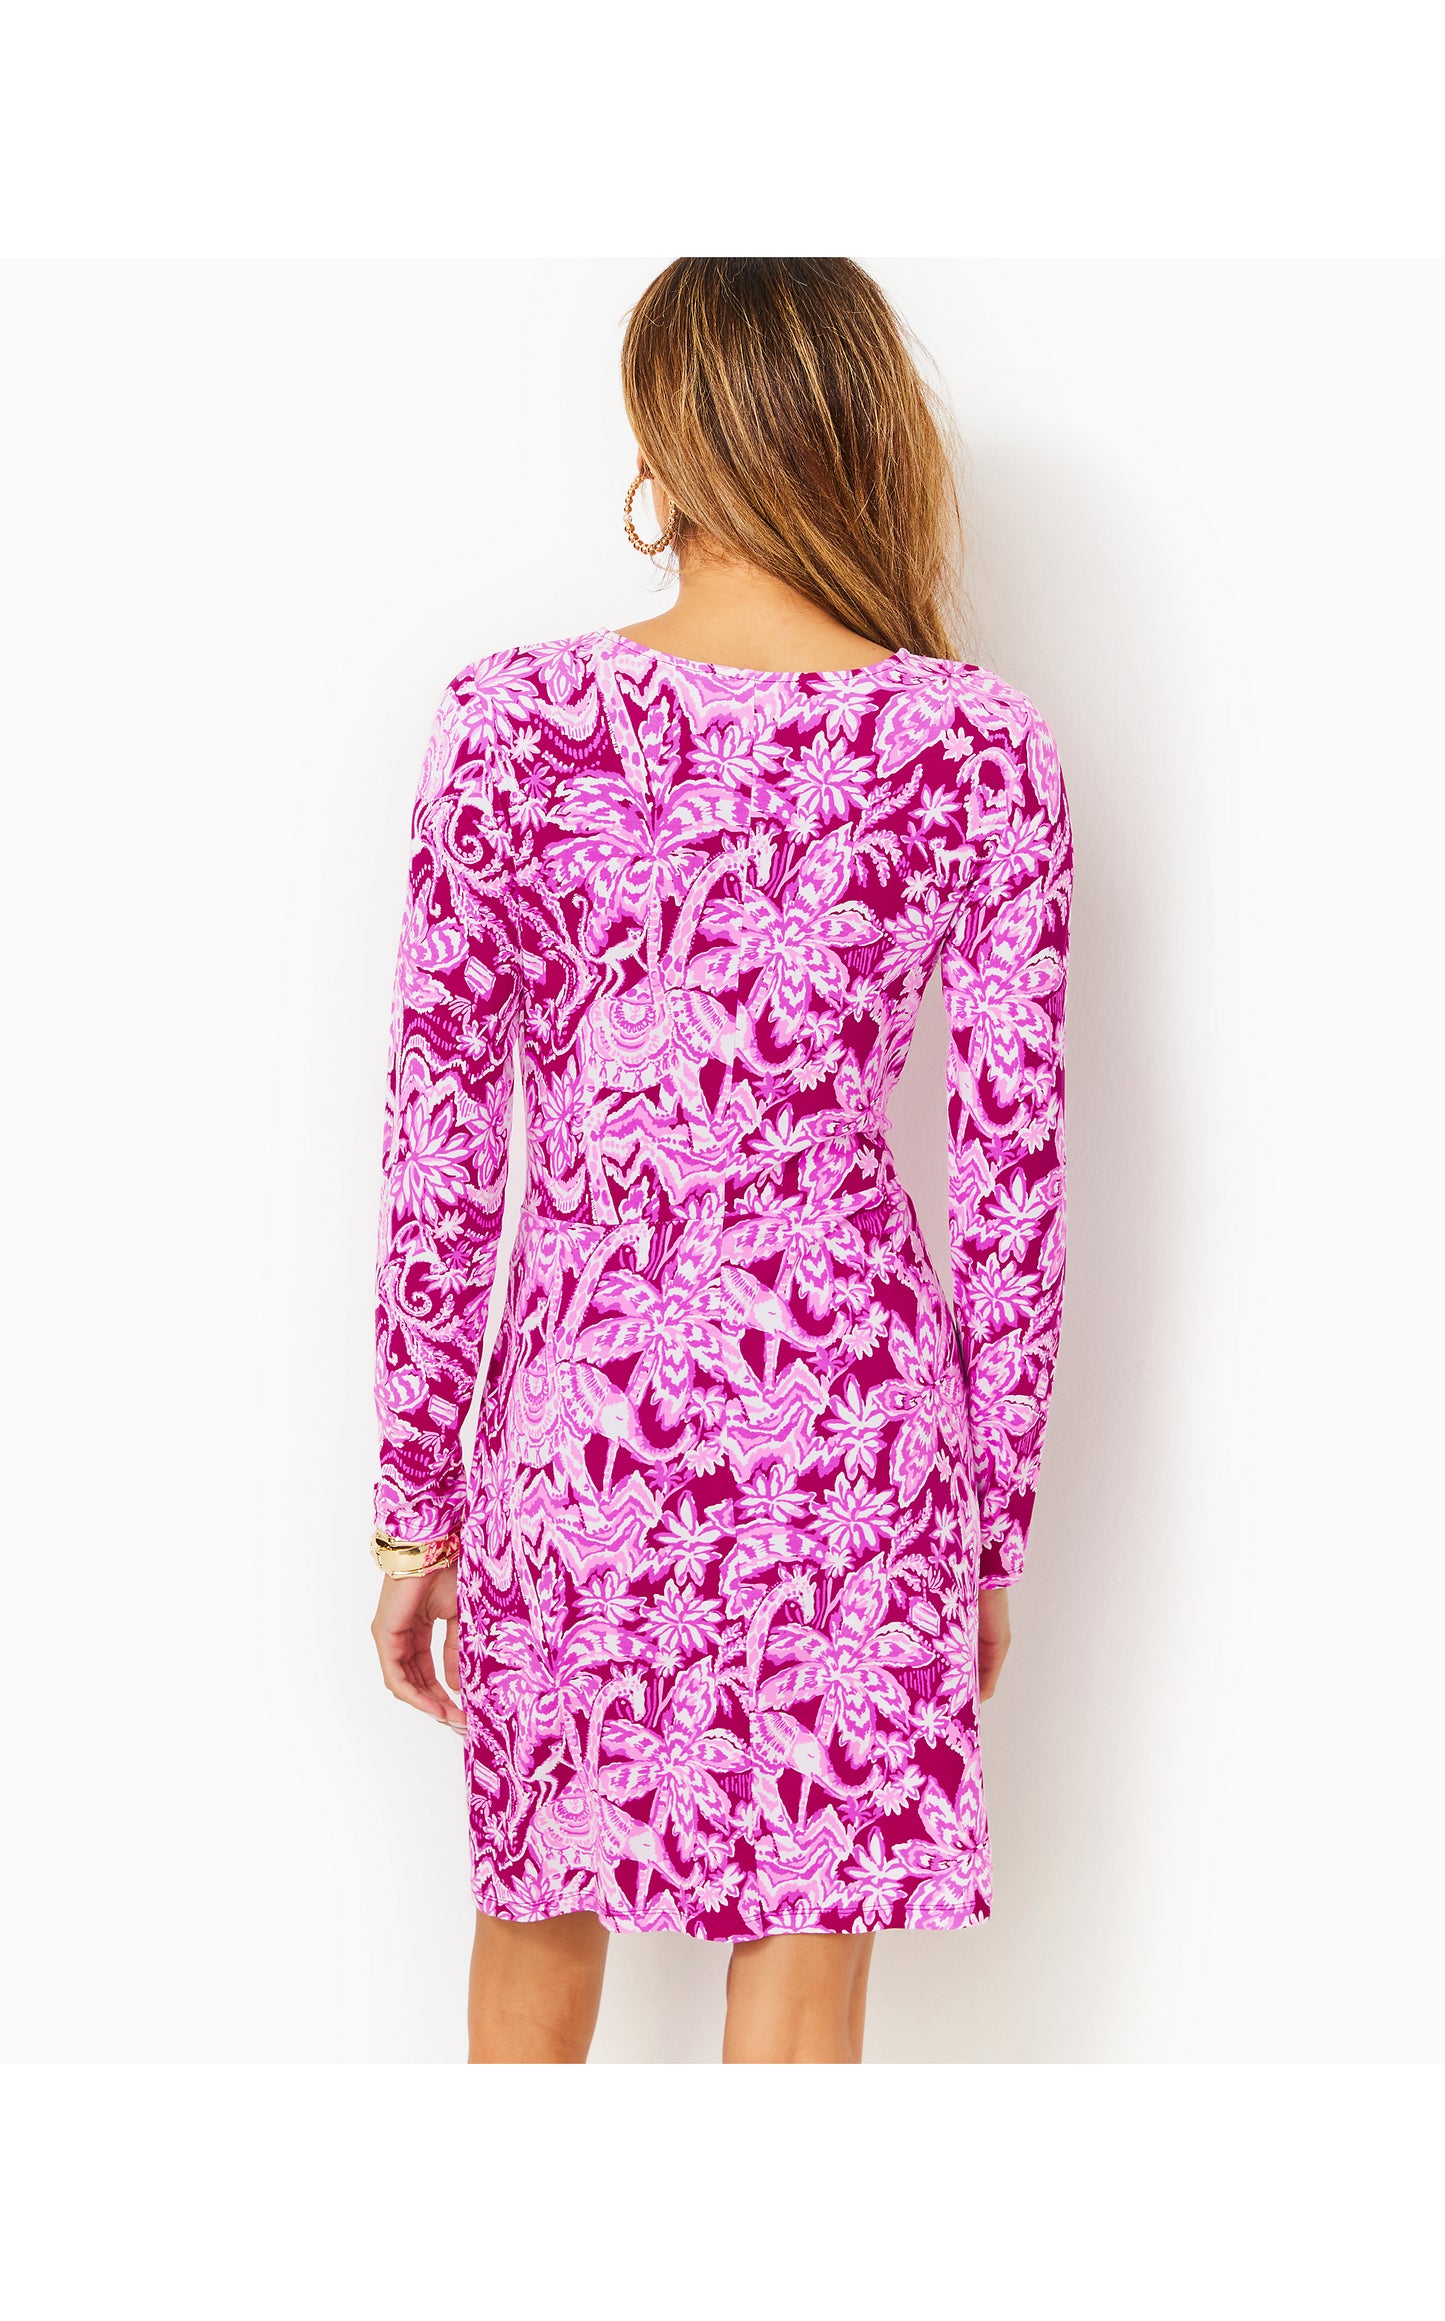 Lynn Long Sleeve Twist Dress in Mulberry Wild Ride